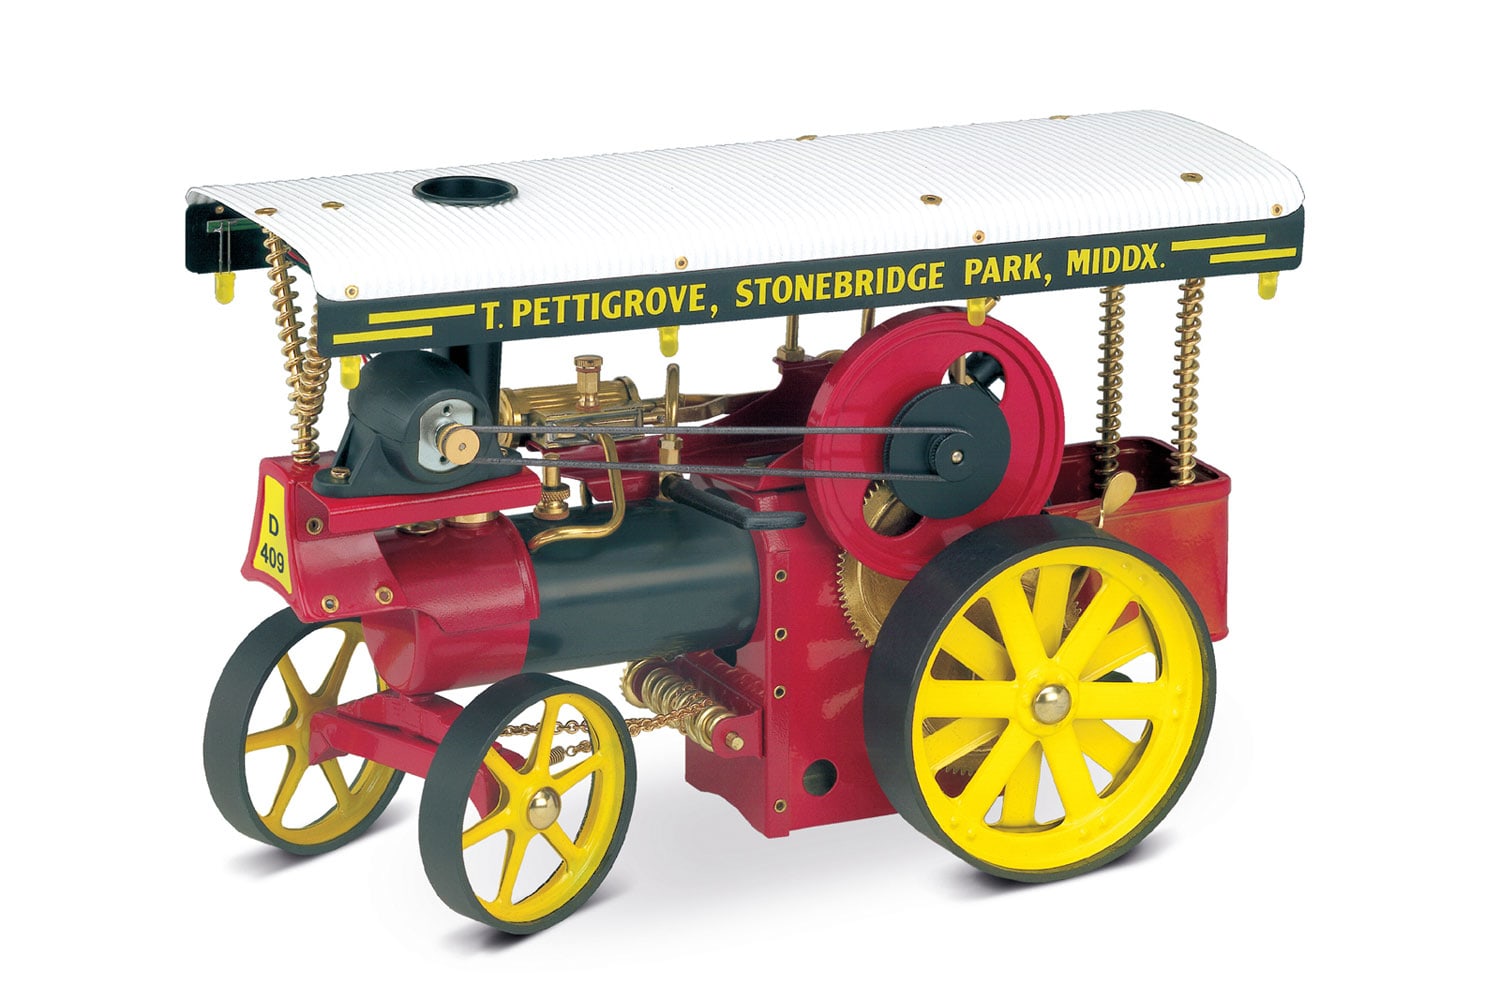 Doll Steam Engine Cannon ball Pressure Weight Fleischmann Wilesco Weeden 